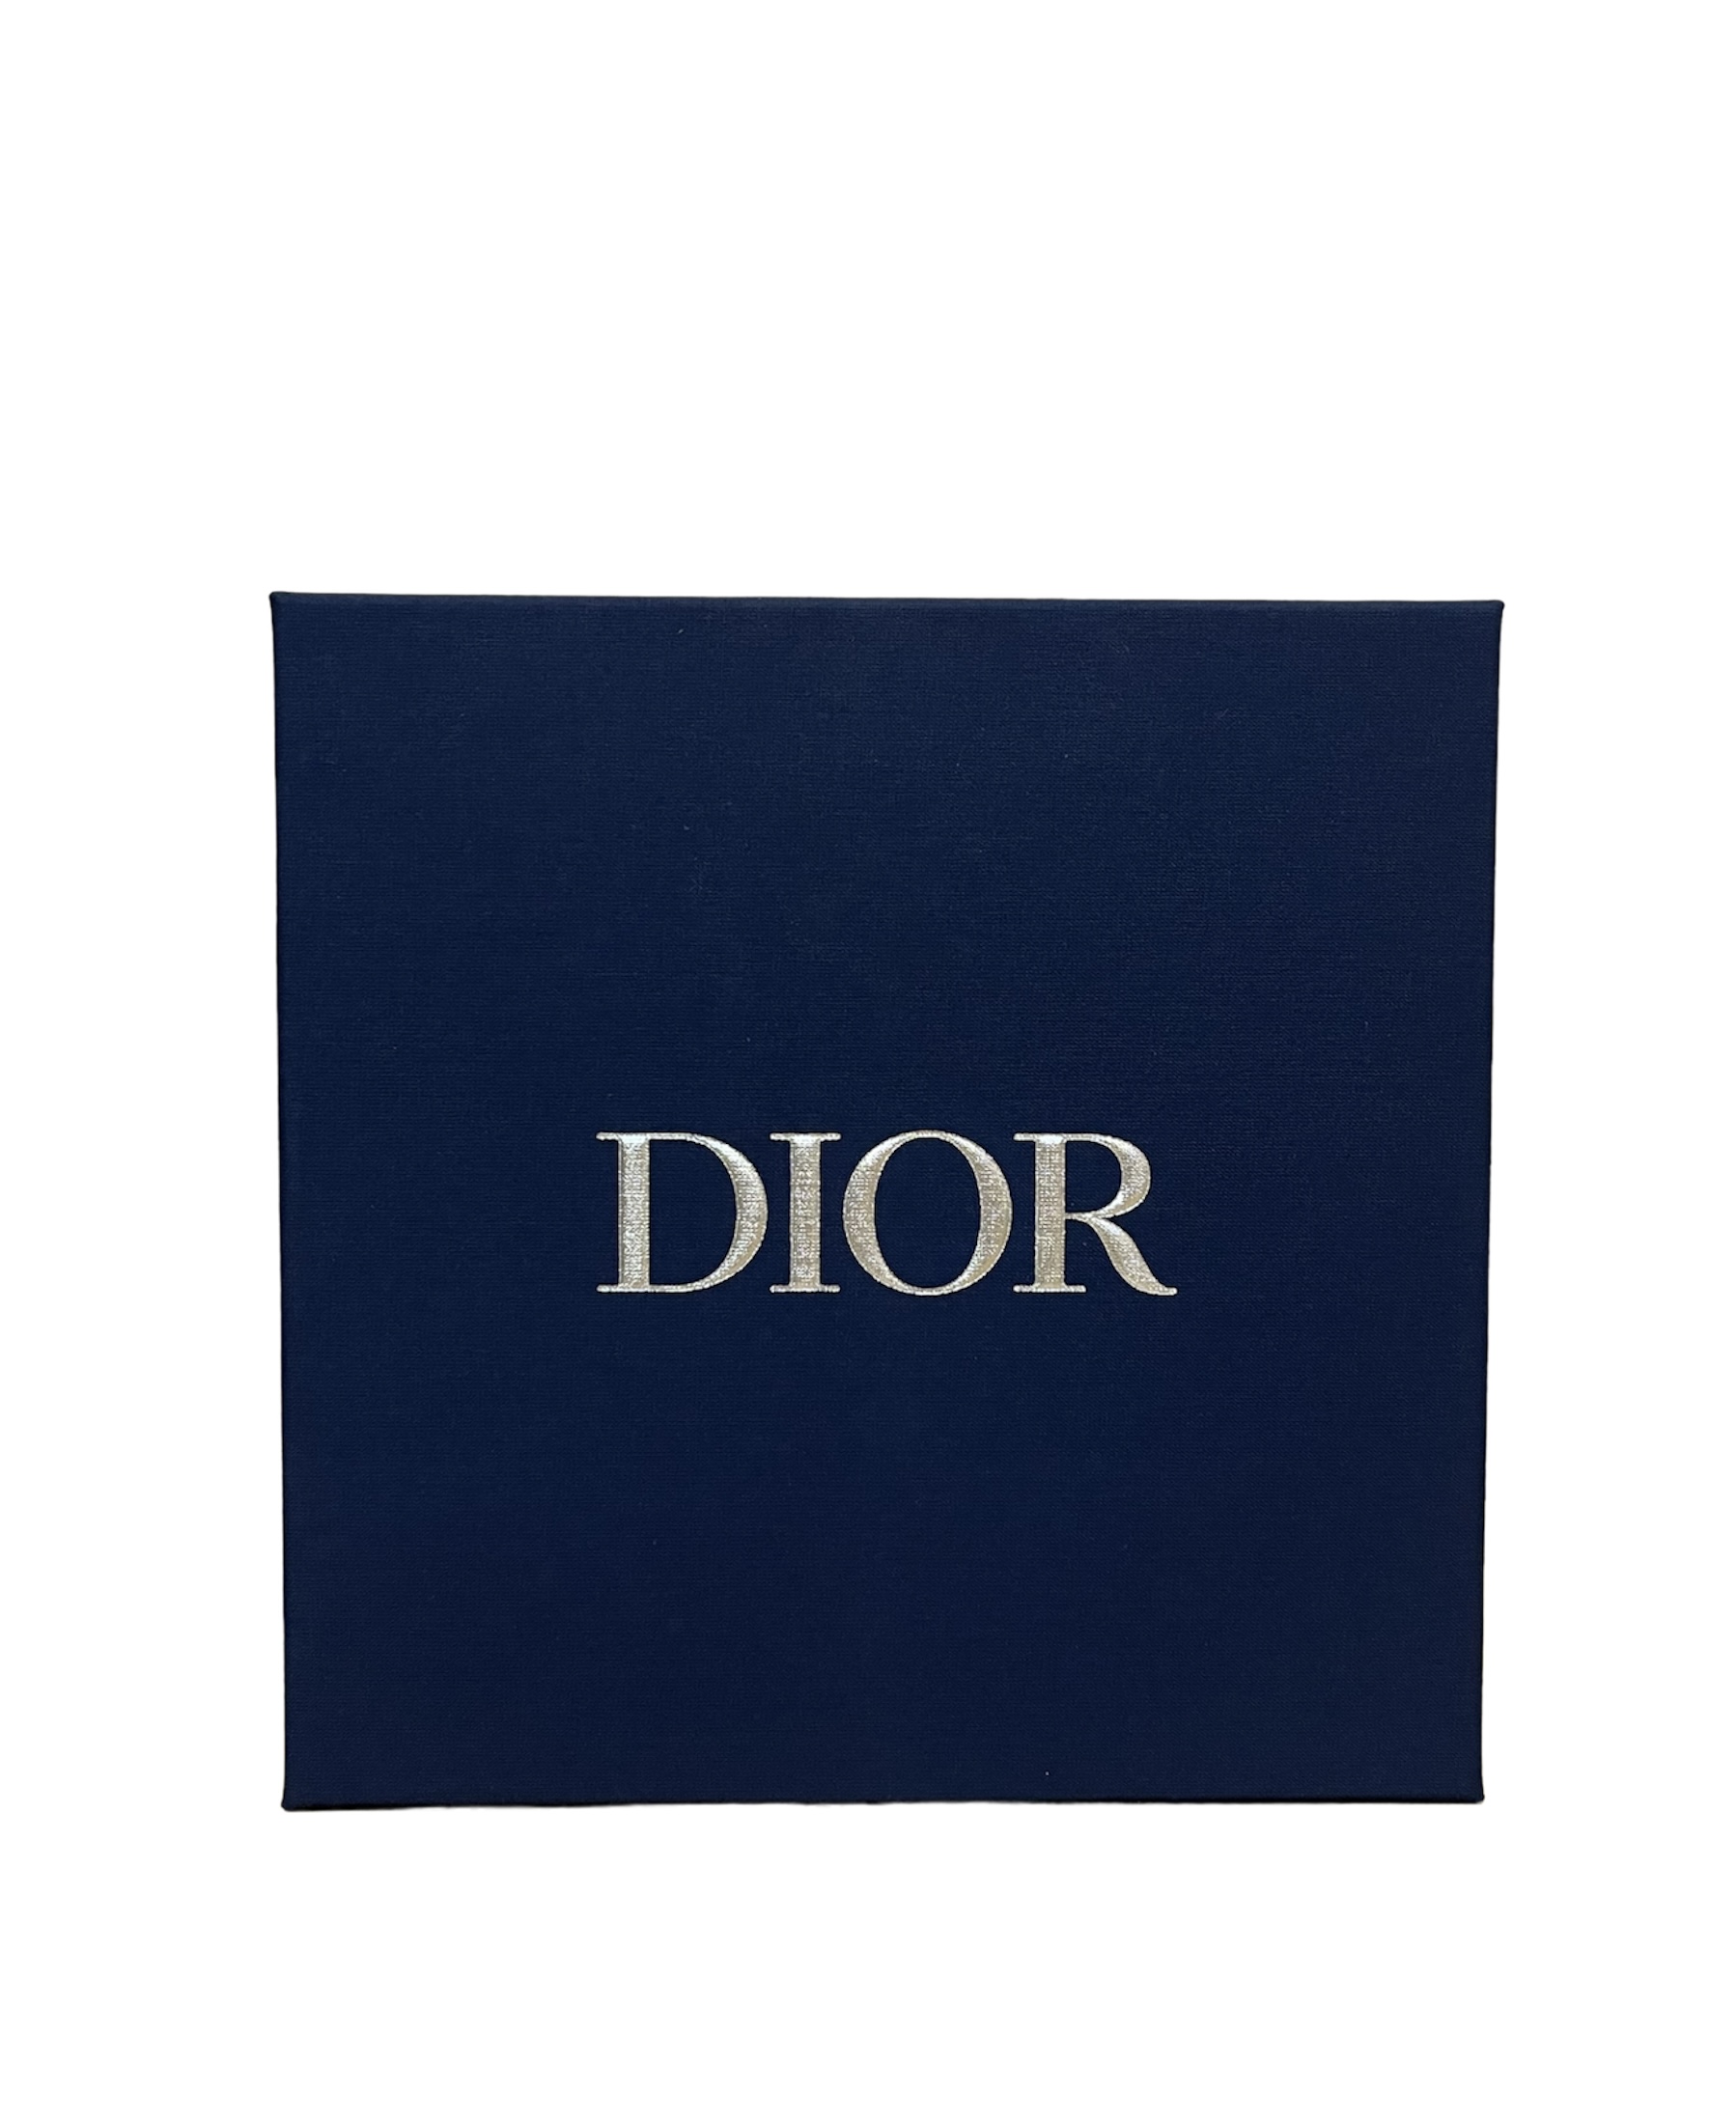 Dior Homme Set Eau de Toilette 100ml + Shower Gel 50ml + After Shave Balm 50ml